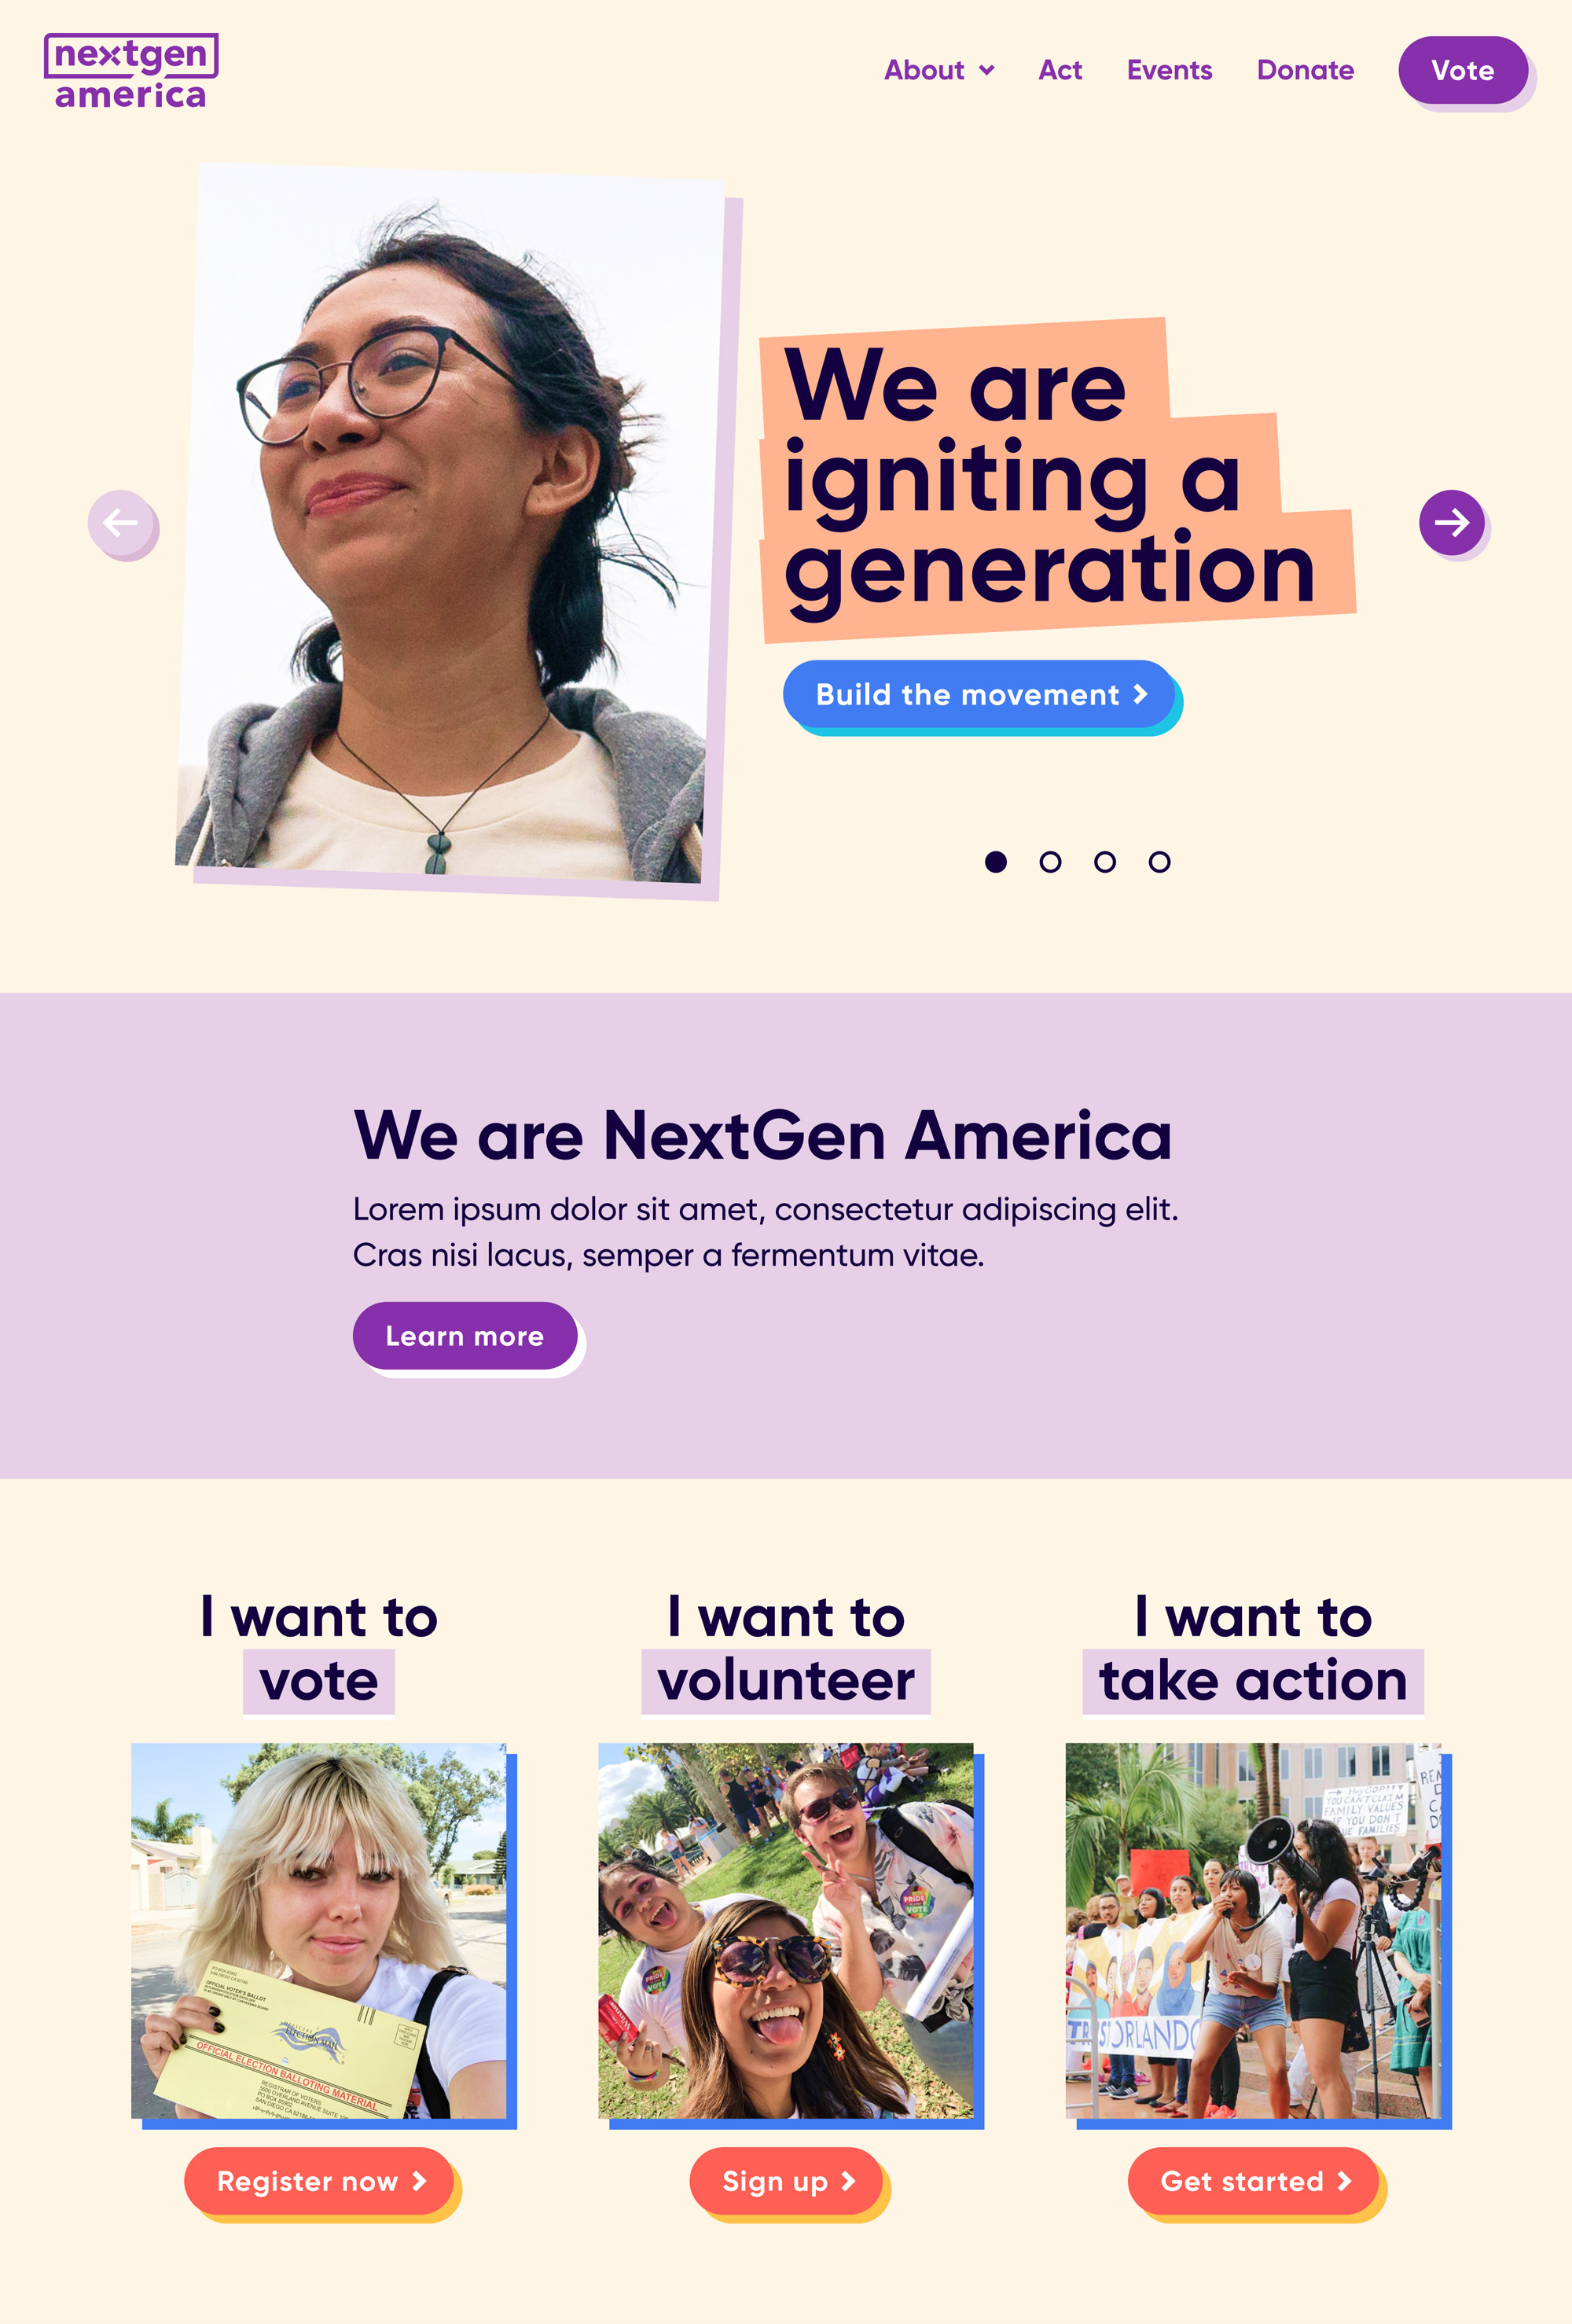 Stephen Cummings, NextGen America Website Redesign, 2021